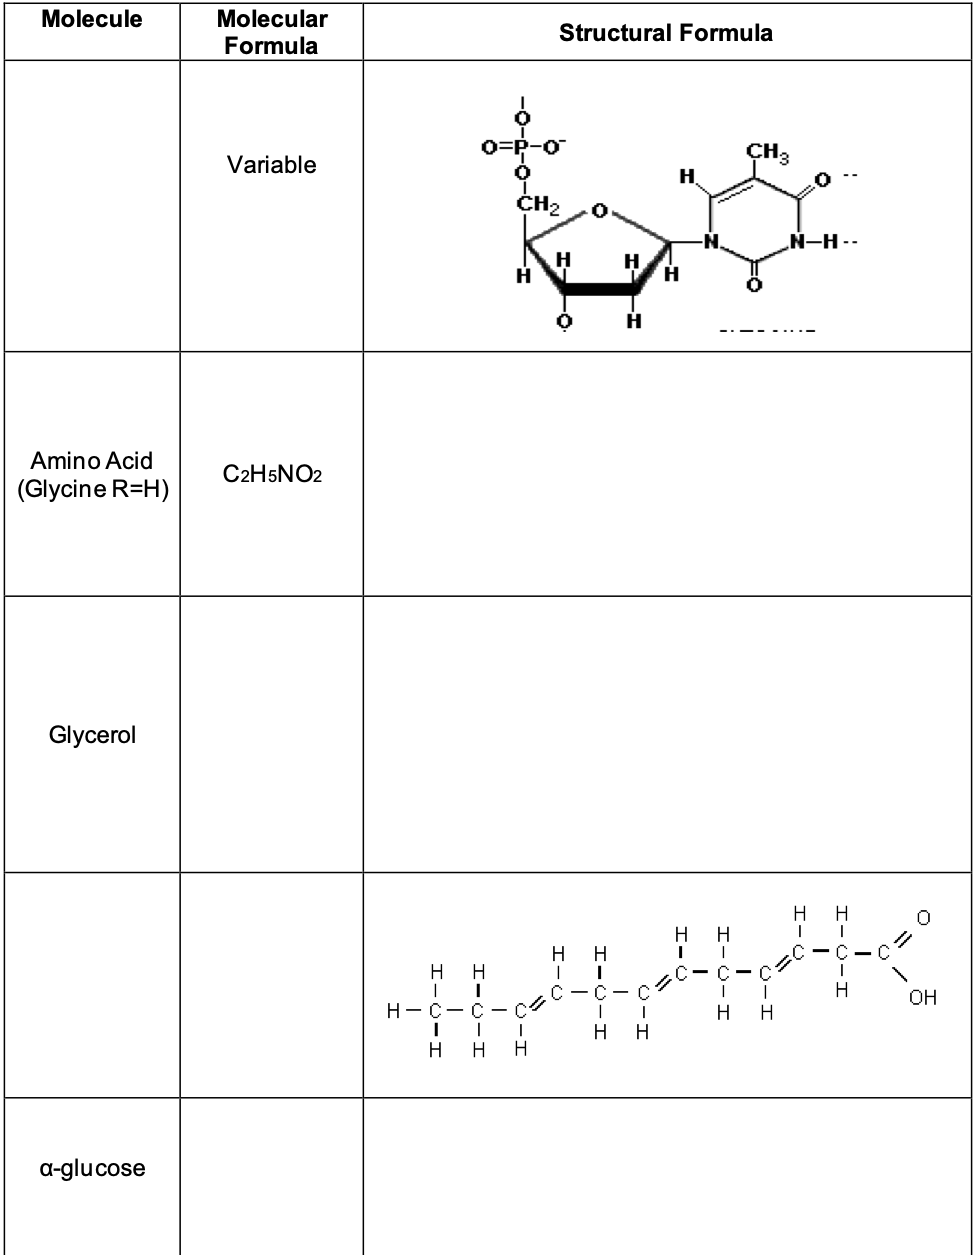 Molecule
Amino Acid
(Glycine R=H)
Glycerol
a-glucose
Molecular
Formula
Variable
C2H5NO2
Structural Formula
H
CH₂
H
H H
I
I
H-C-C
I
I
I
H H H
H
I
H
I
H
H
L
H
I
H
H
CH3
0
N-H--
H H
Ite
H
OH
H H
H H
I
C